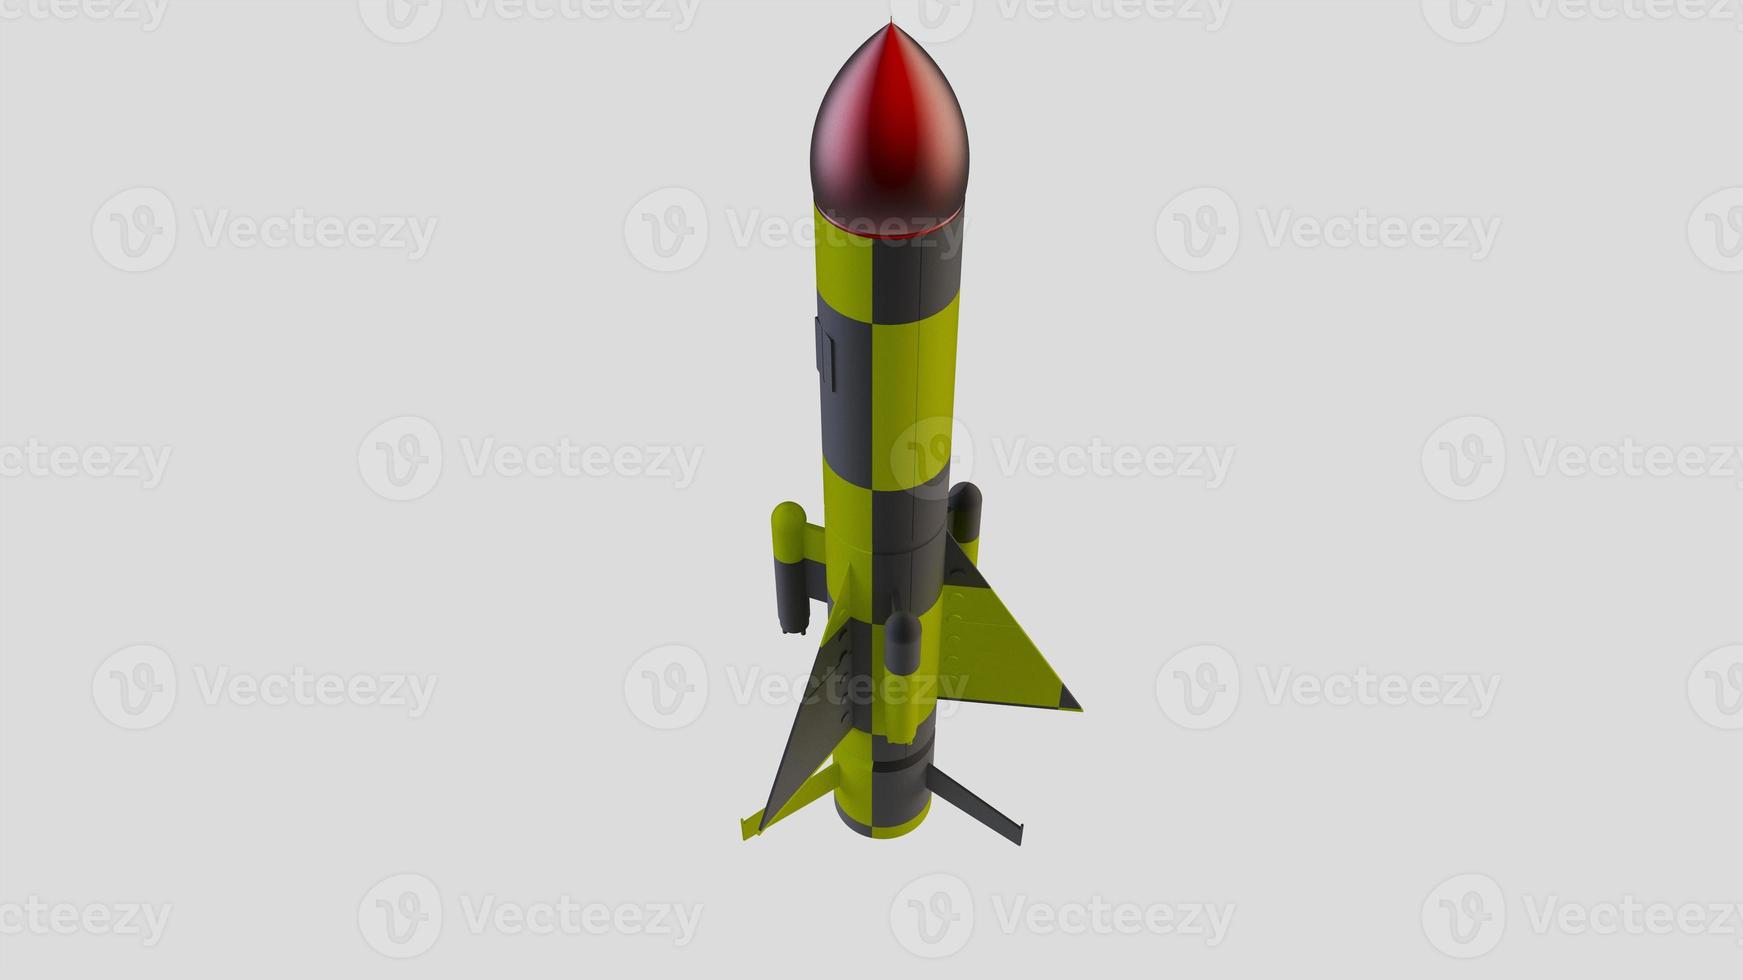 fusée missile guerre conflit munitions ogive nucléaire militaire arme nuke illustration 3d vaisseau spatial photo